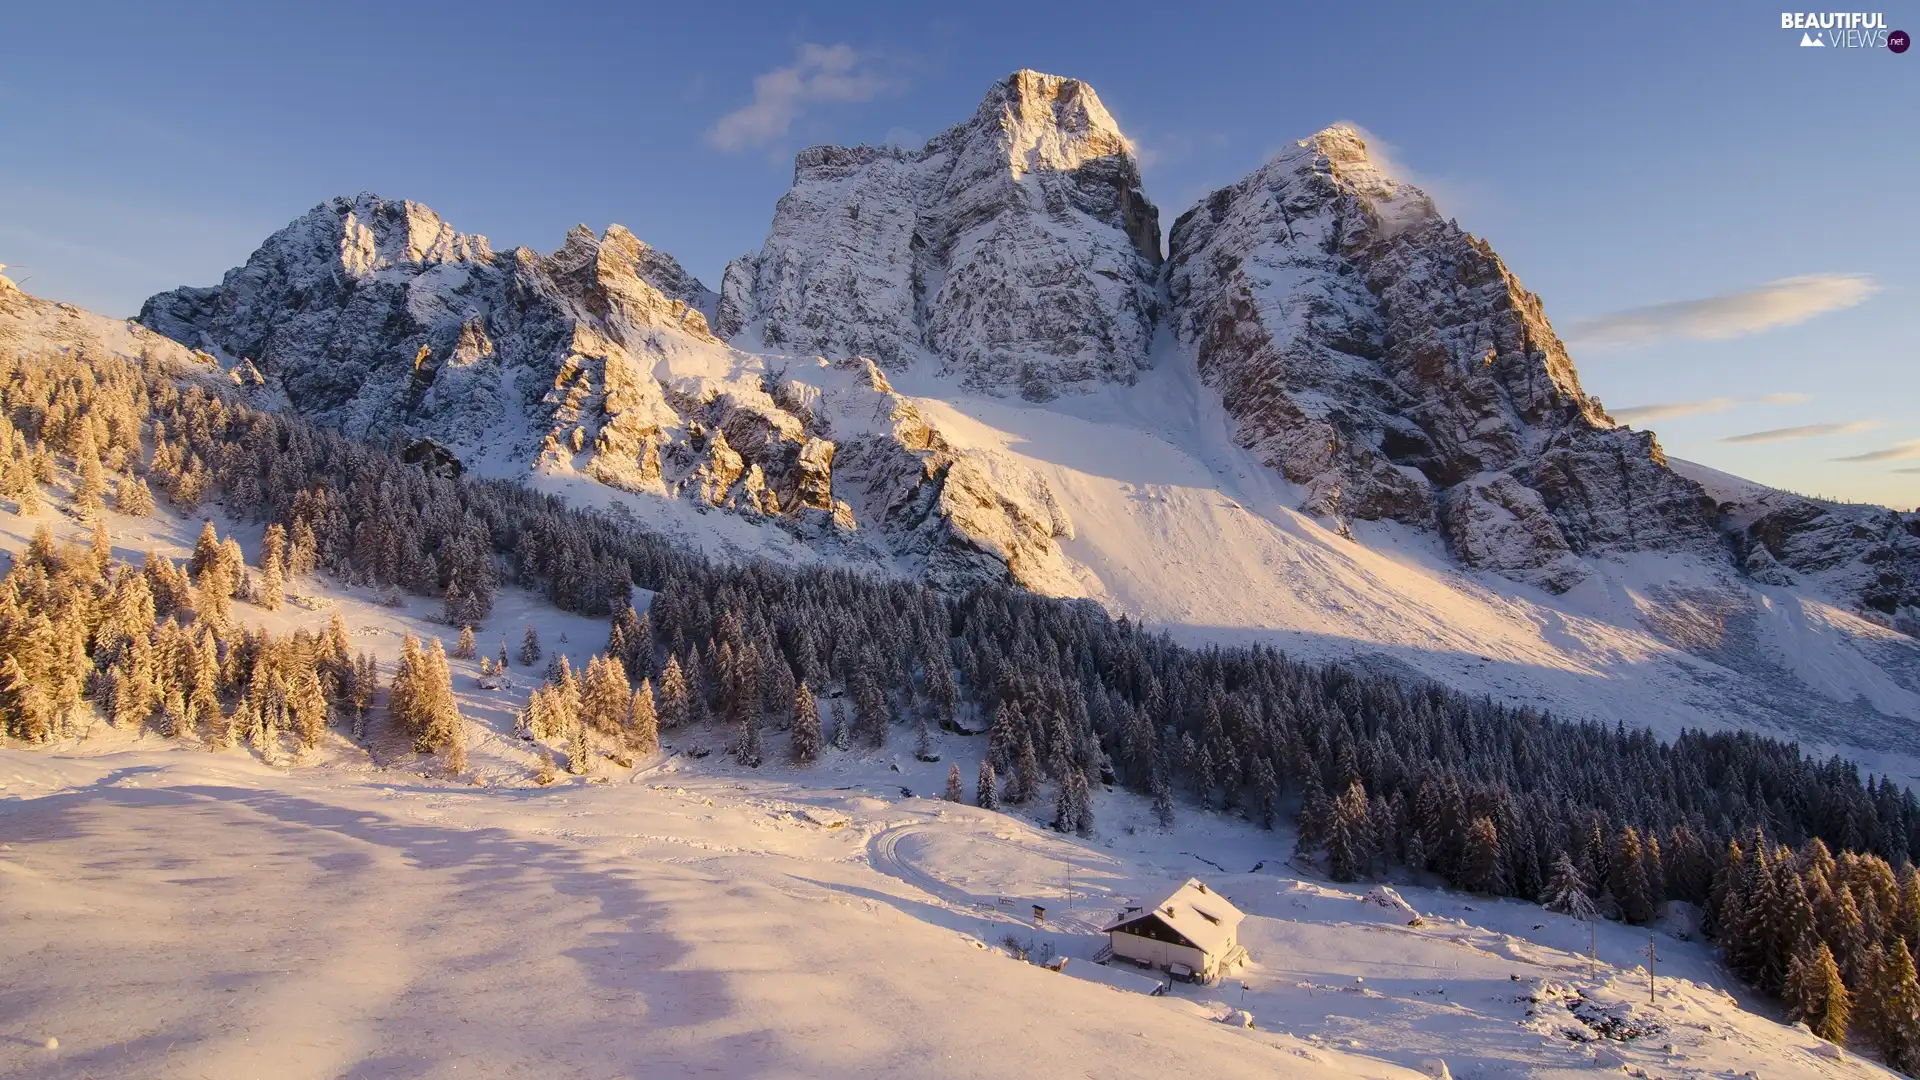 Monte Pelmo Mountain, Italy, forest, house, winter, Dolomites Mountains